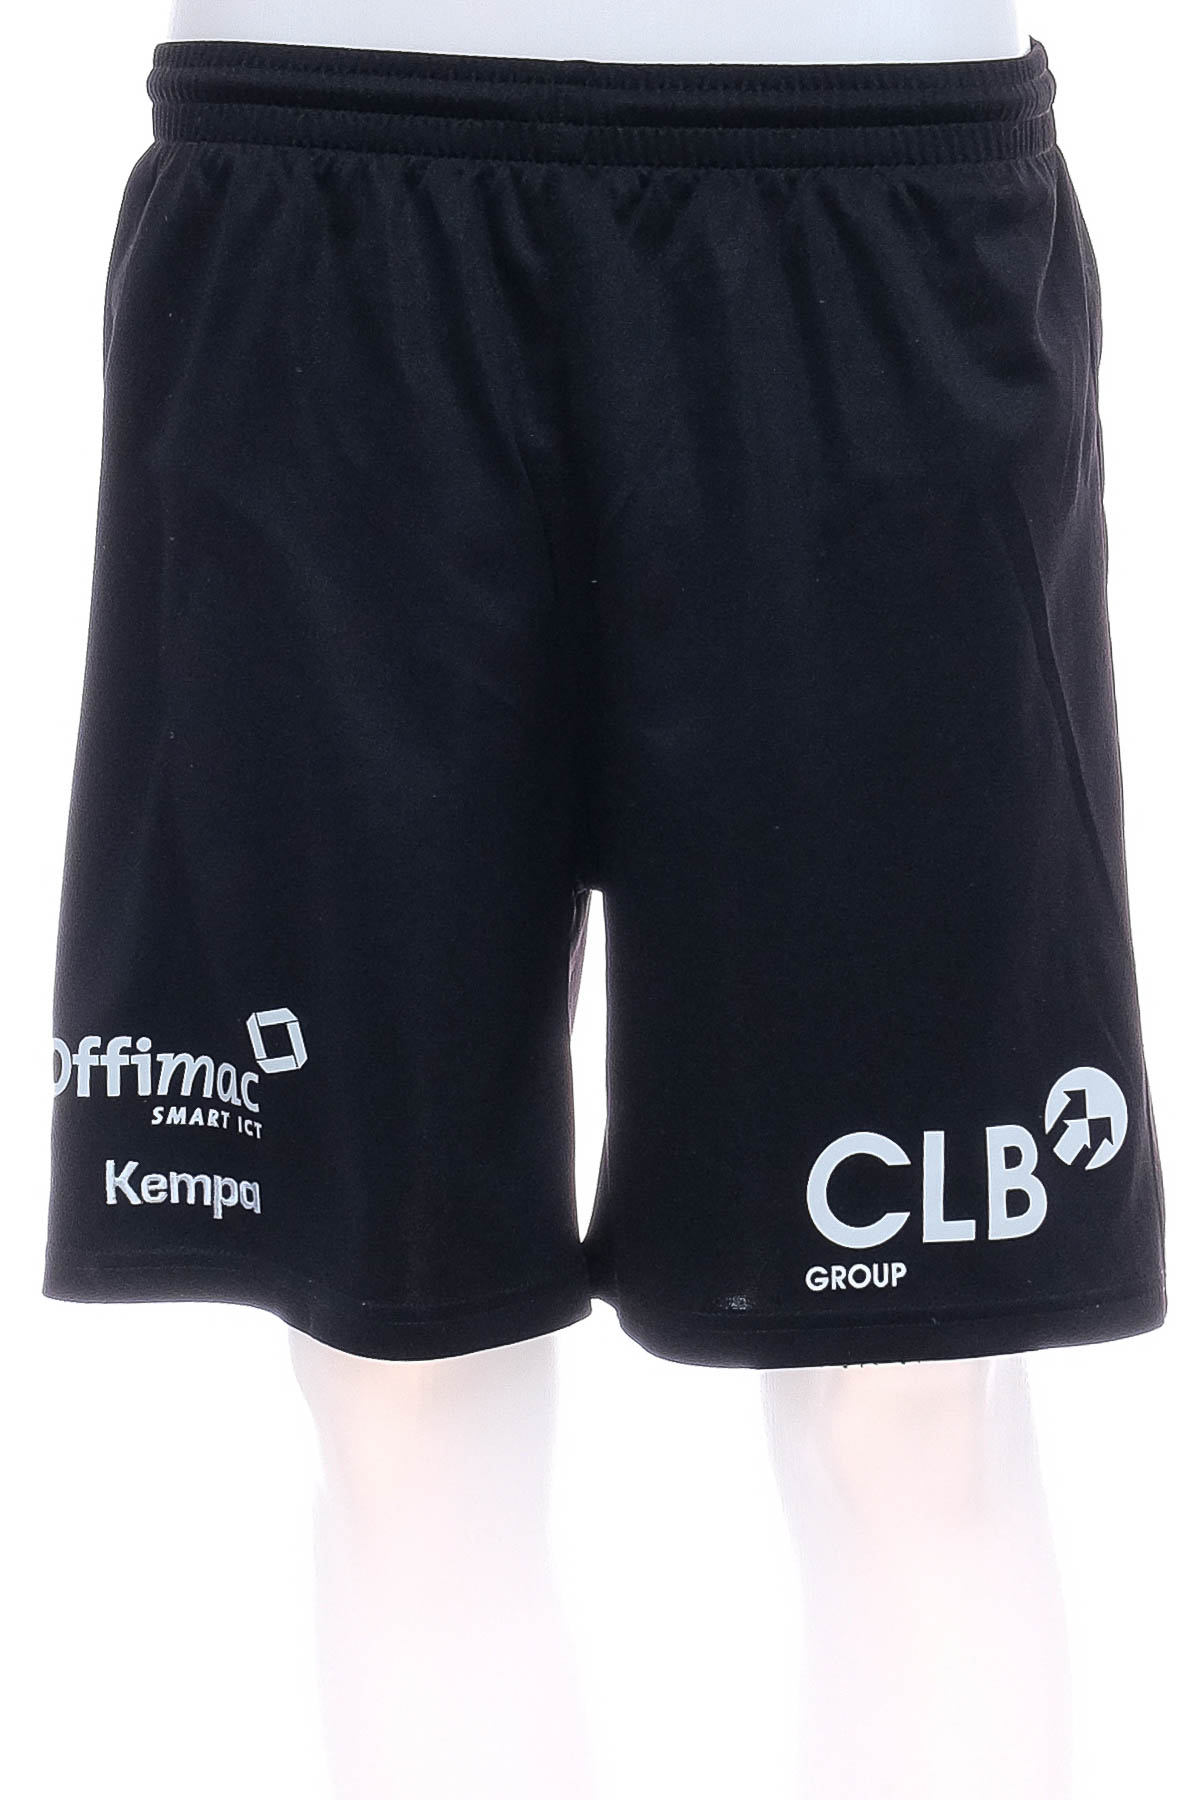 Men's shorts - Kempa - 0